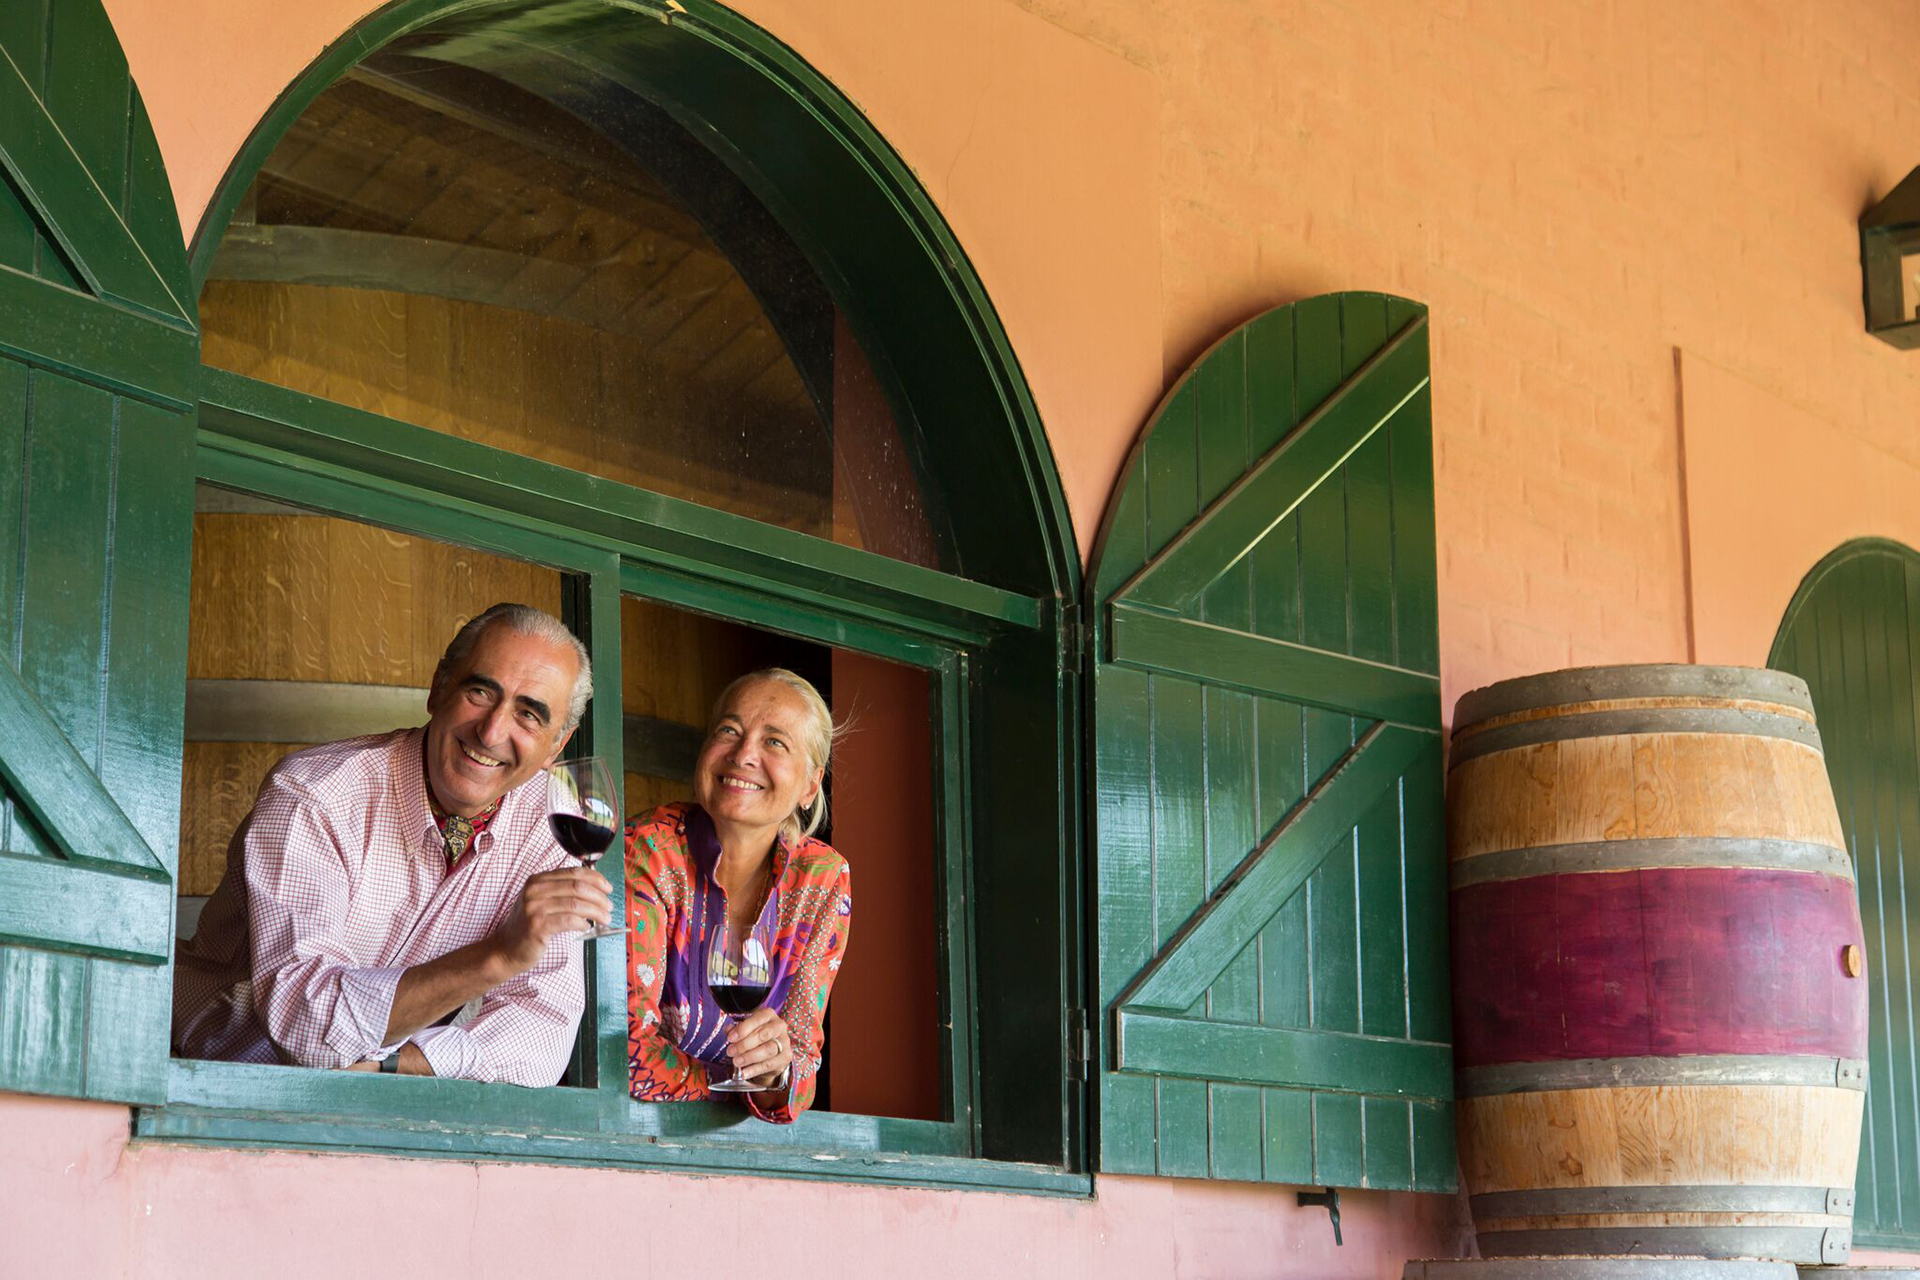 El enólogo Hervé J. Fabre y su esposa Diane, propietarios de la Bodega Fabre Montmayou. Si es un padre sensible y apasionado, quizás lo mejor sea elegir un vino con una historia detrás